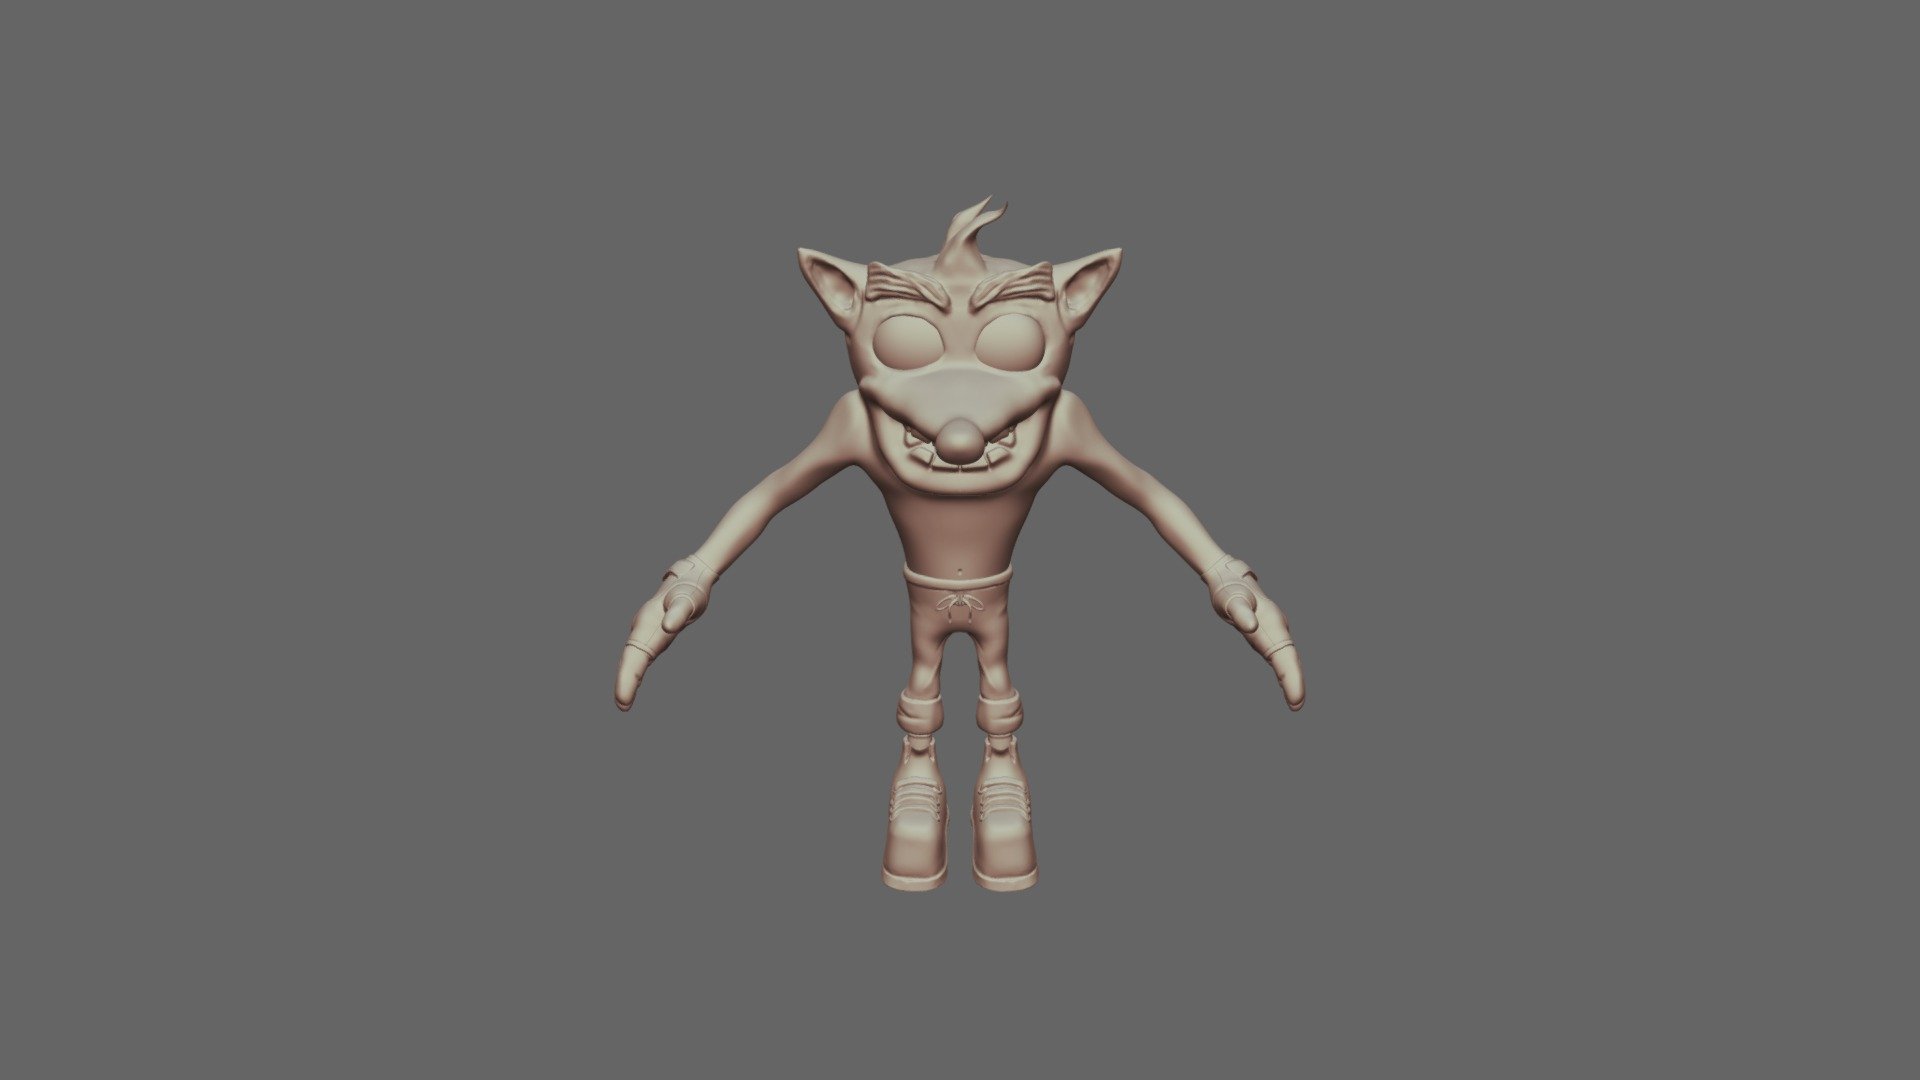 05 10 2019_Crash Bandicoot - 3D model by Caio.Vitari [dd0e06d] - Sketchfab